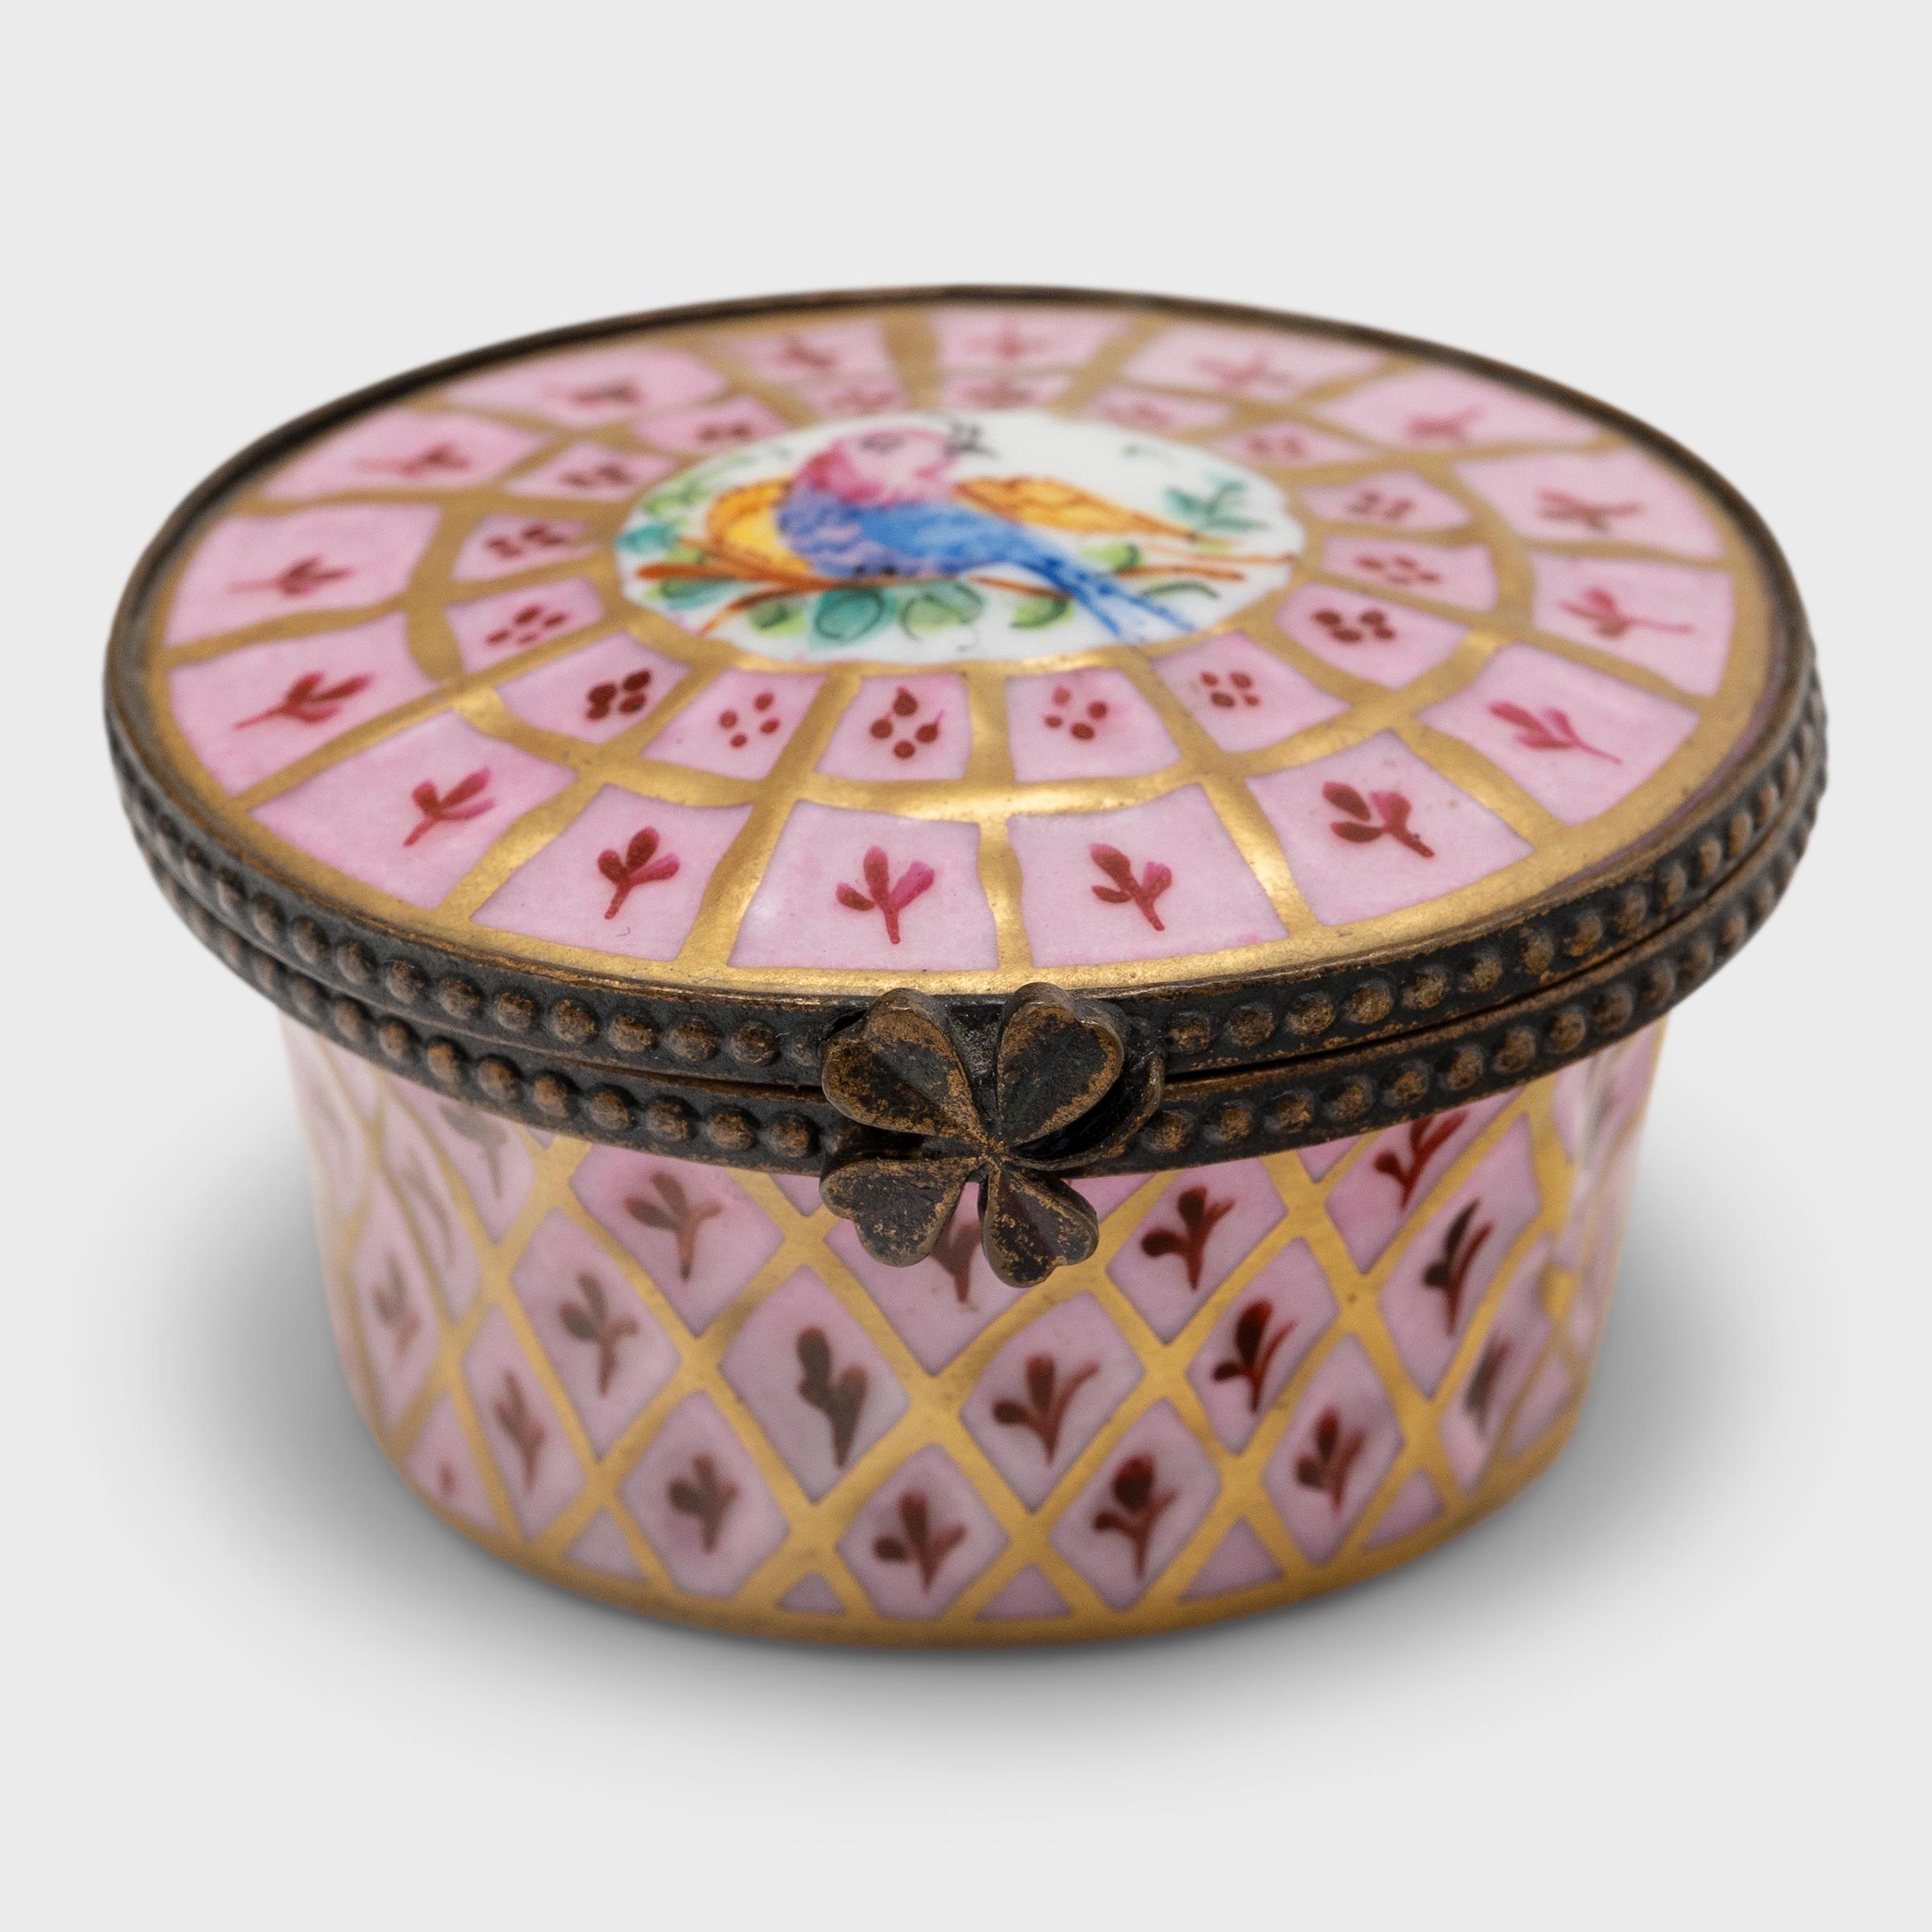 Diese phantasievollen Porzellandosen bezaubern mit zarten Farben und handgemalter Dekoration. Diese kompakten Schmuckdosen im Stil des traditionellen Limoges-Porzellans knüpfen an Traditionen an, die bis ins 18. Jahrhundert zurückreichen. Die